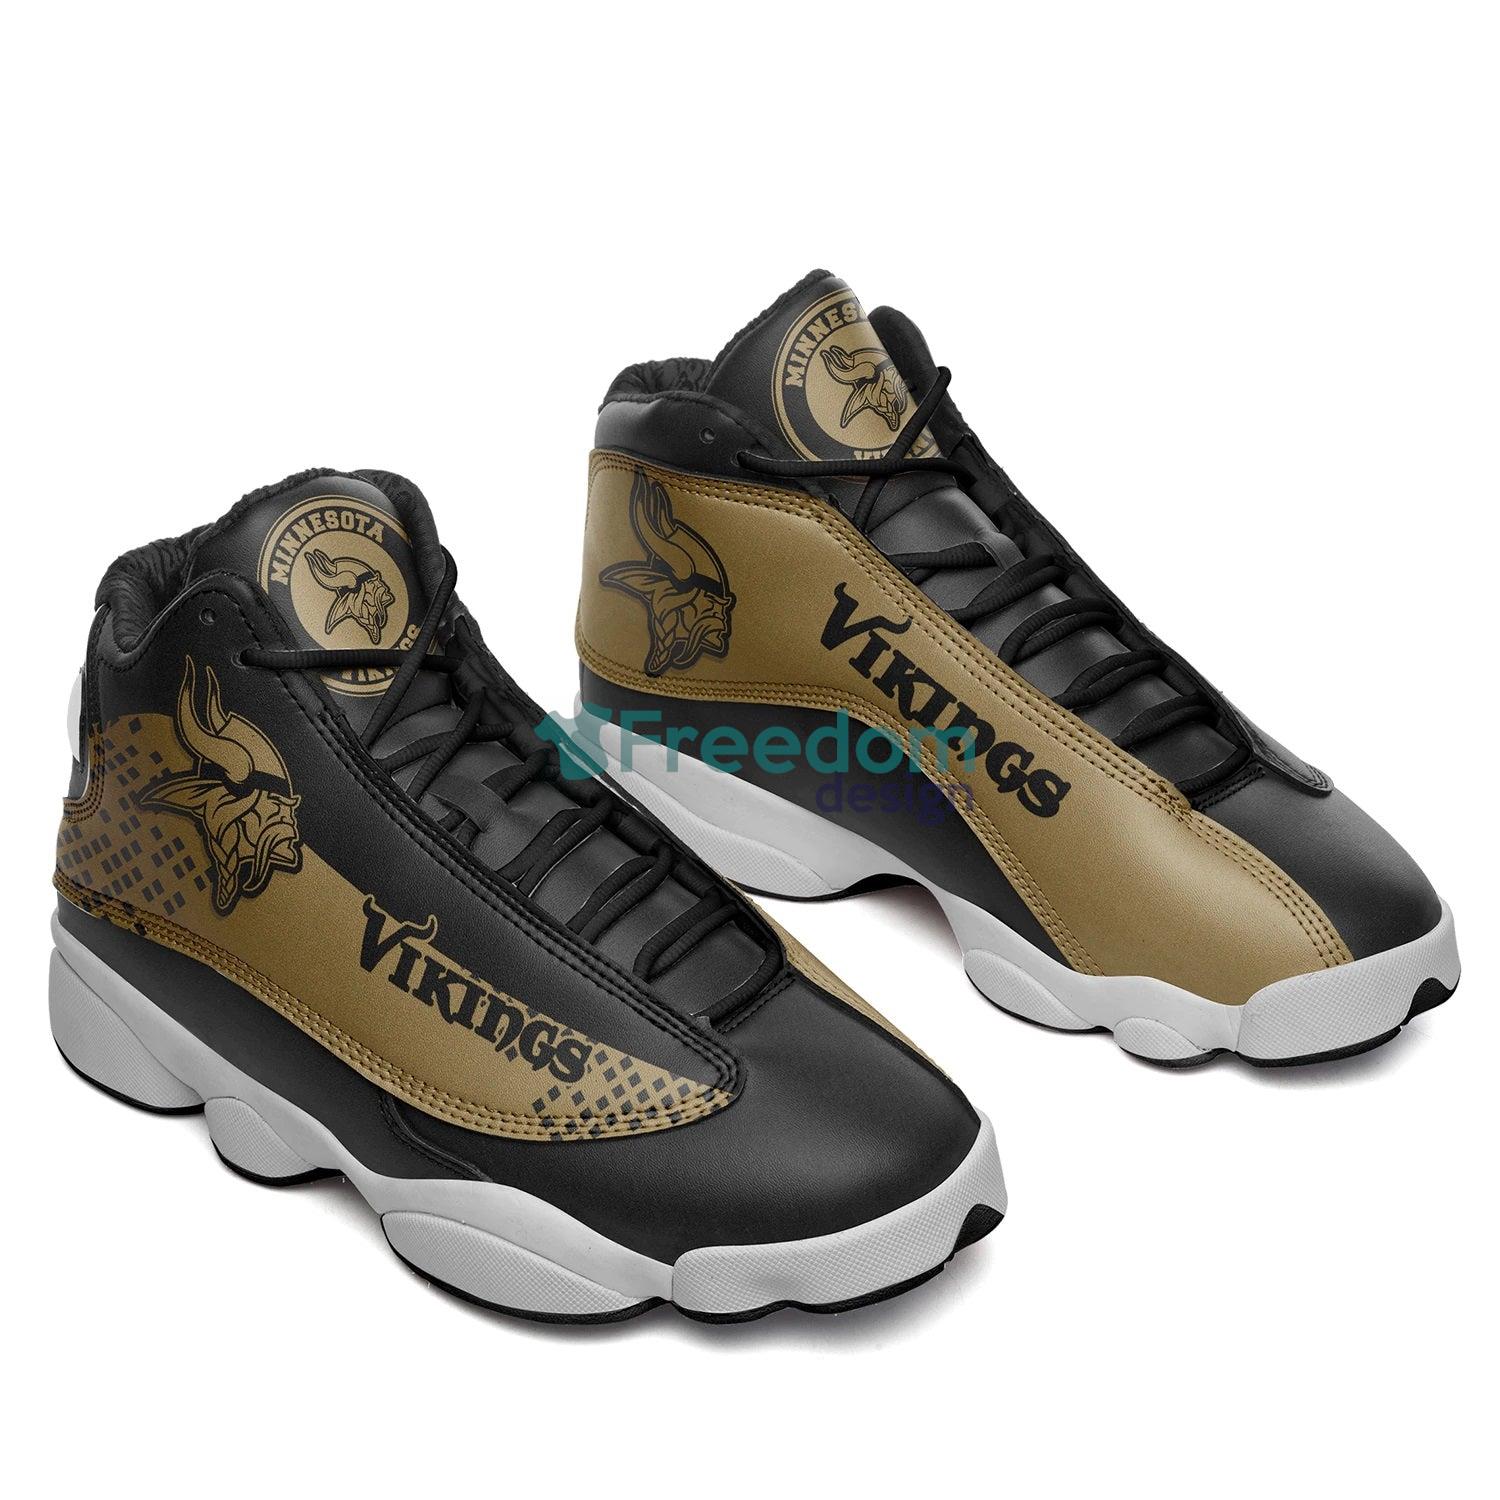 Minnesota Vikings Lover Team Air Jordan 13 Sneaker Shoes For Fans